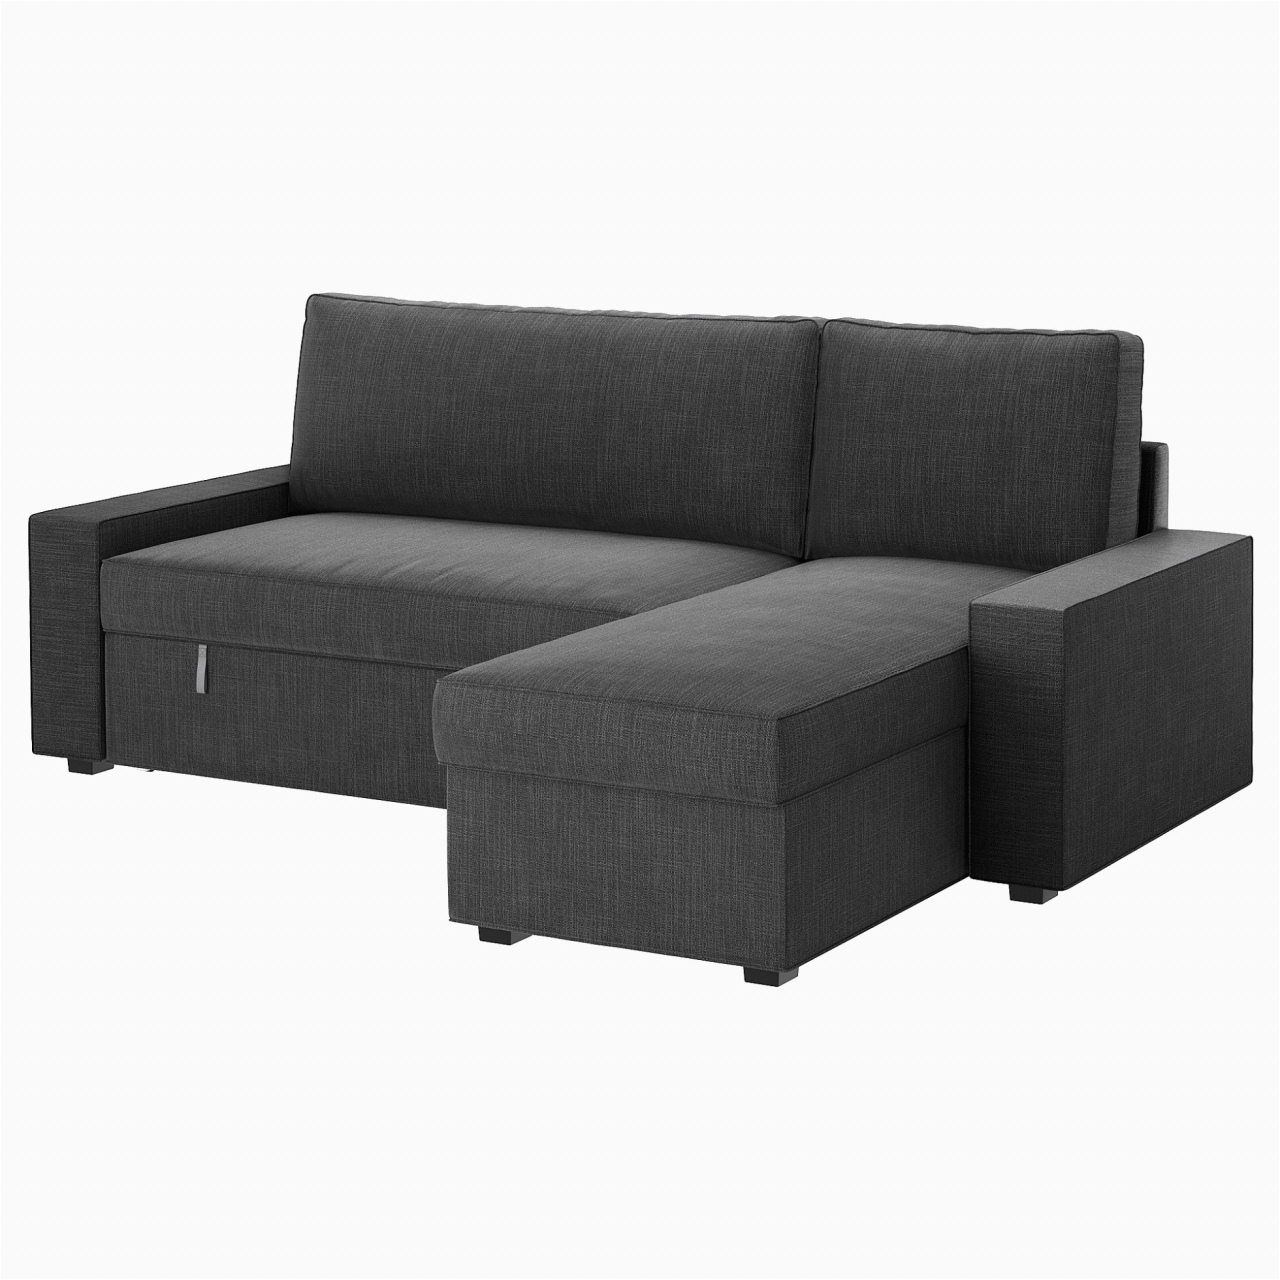 sofa couch bed baur sofa neu big sofa microfaser neu sofa grau stoff graue couch 0d durch sofa couch bed